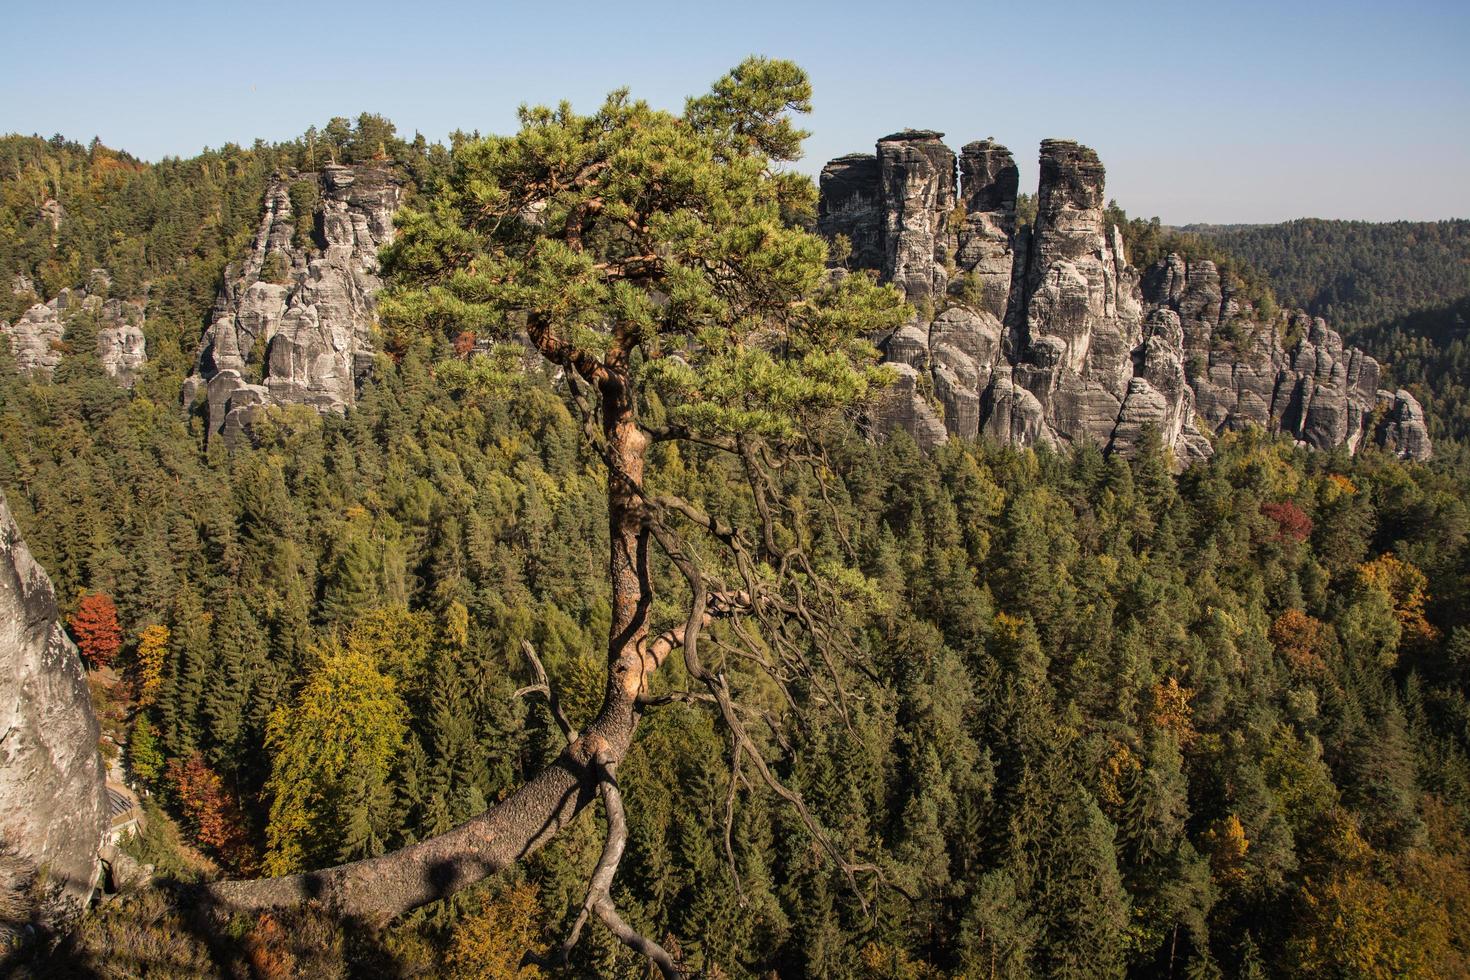 landschap in bergen in het nationale park van Tsjechisch zwitserland, dennenbos en rotsen foto